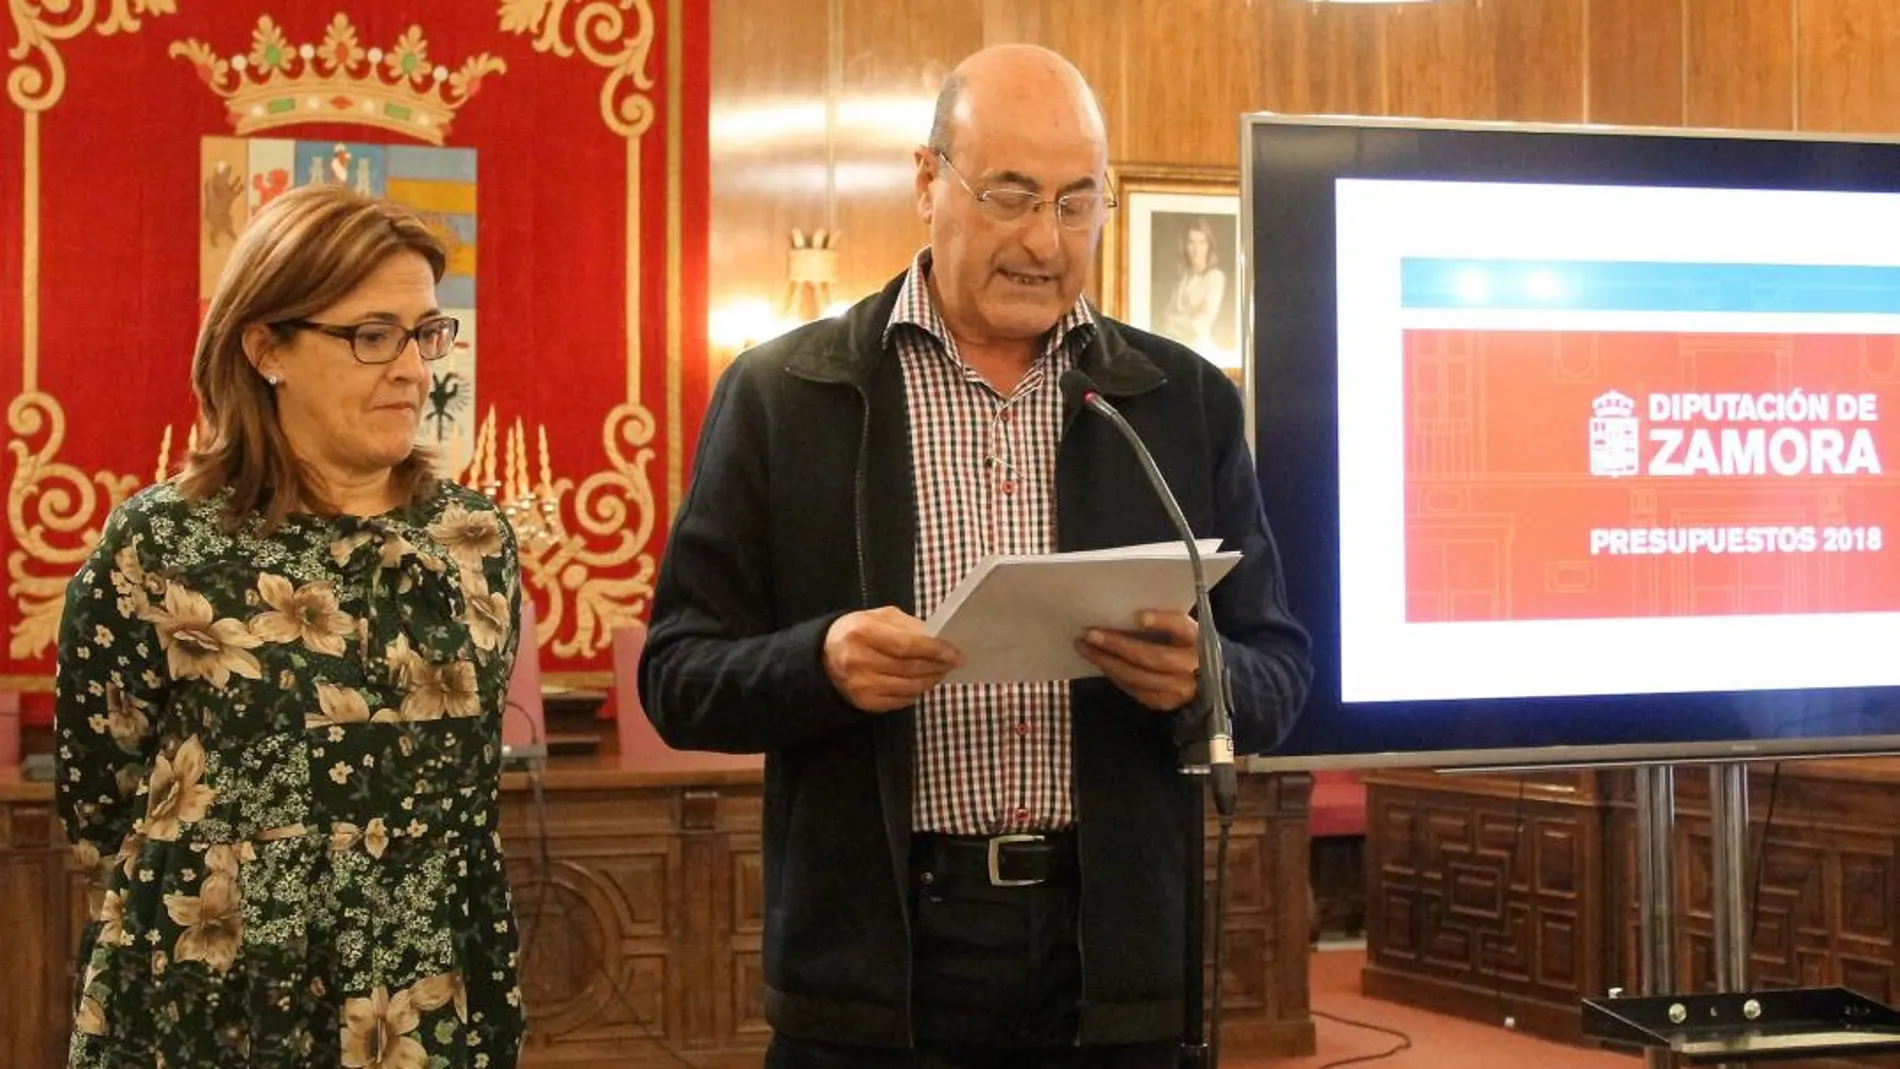 La presidenta Mayte Martín y Antonio Iglesias presentan los presupuestos para 2018